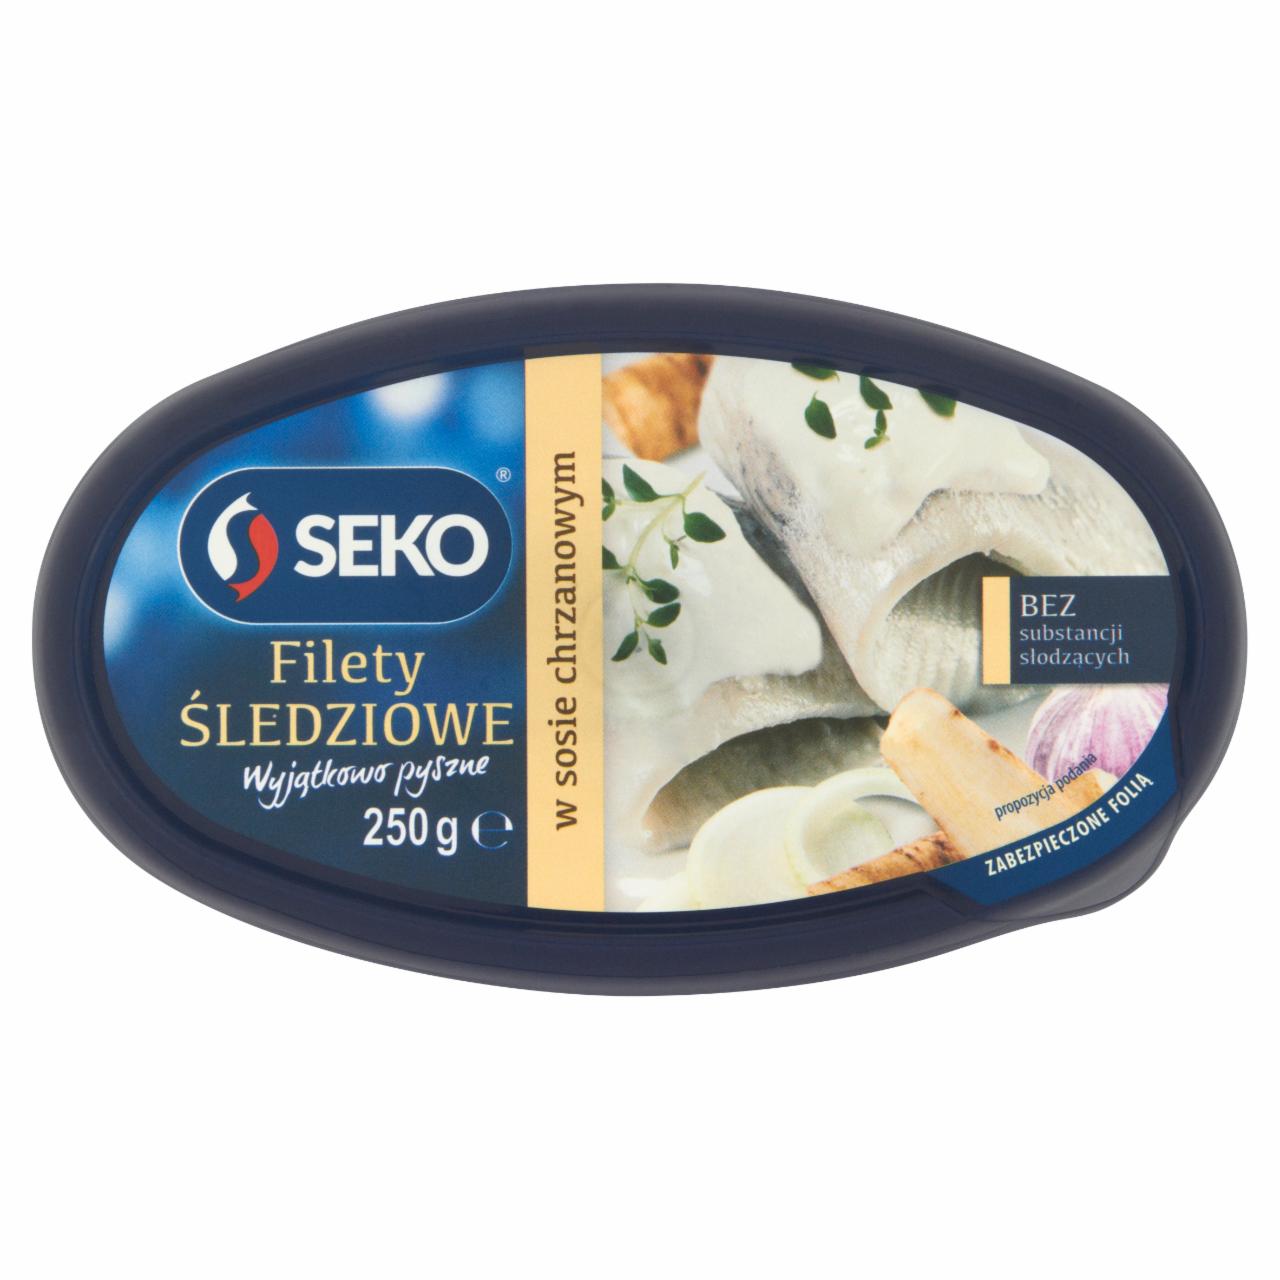 Zdjęcia - Seko Filety śledziowe w sosie chrzanowym 250 g